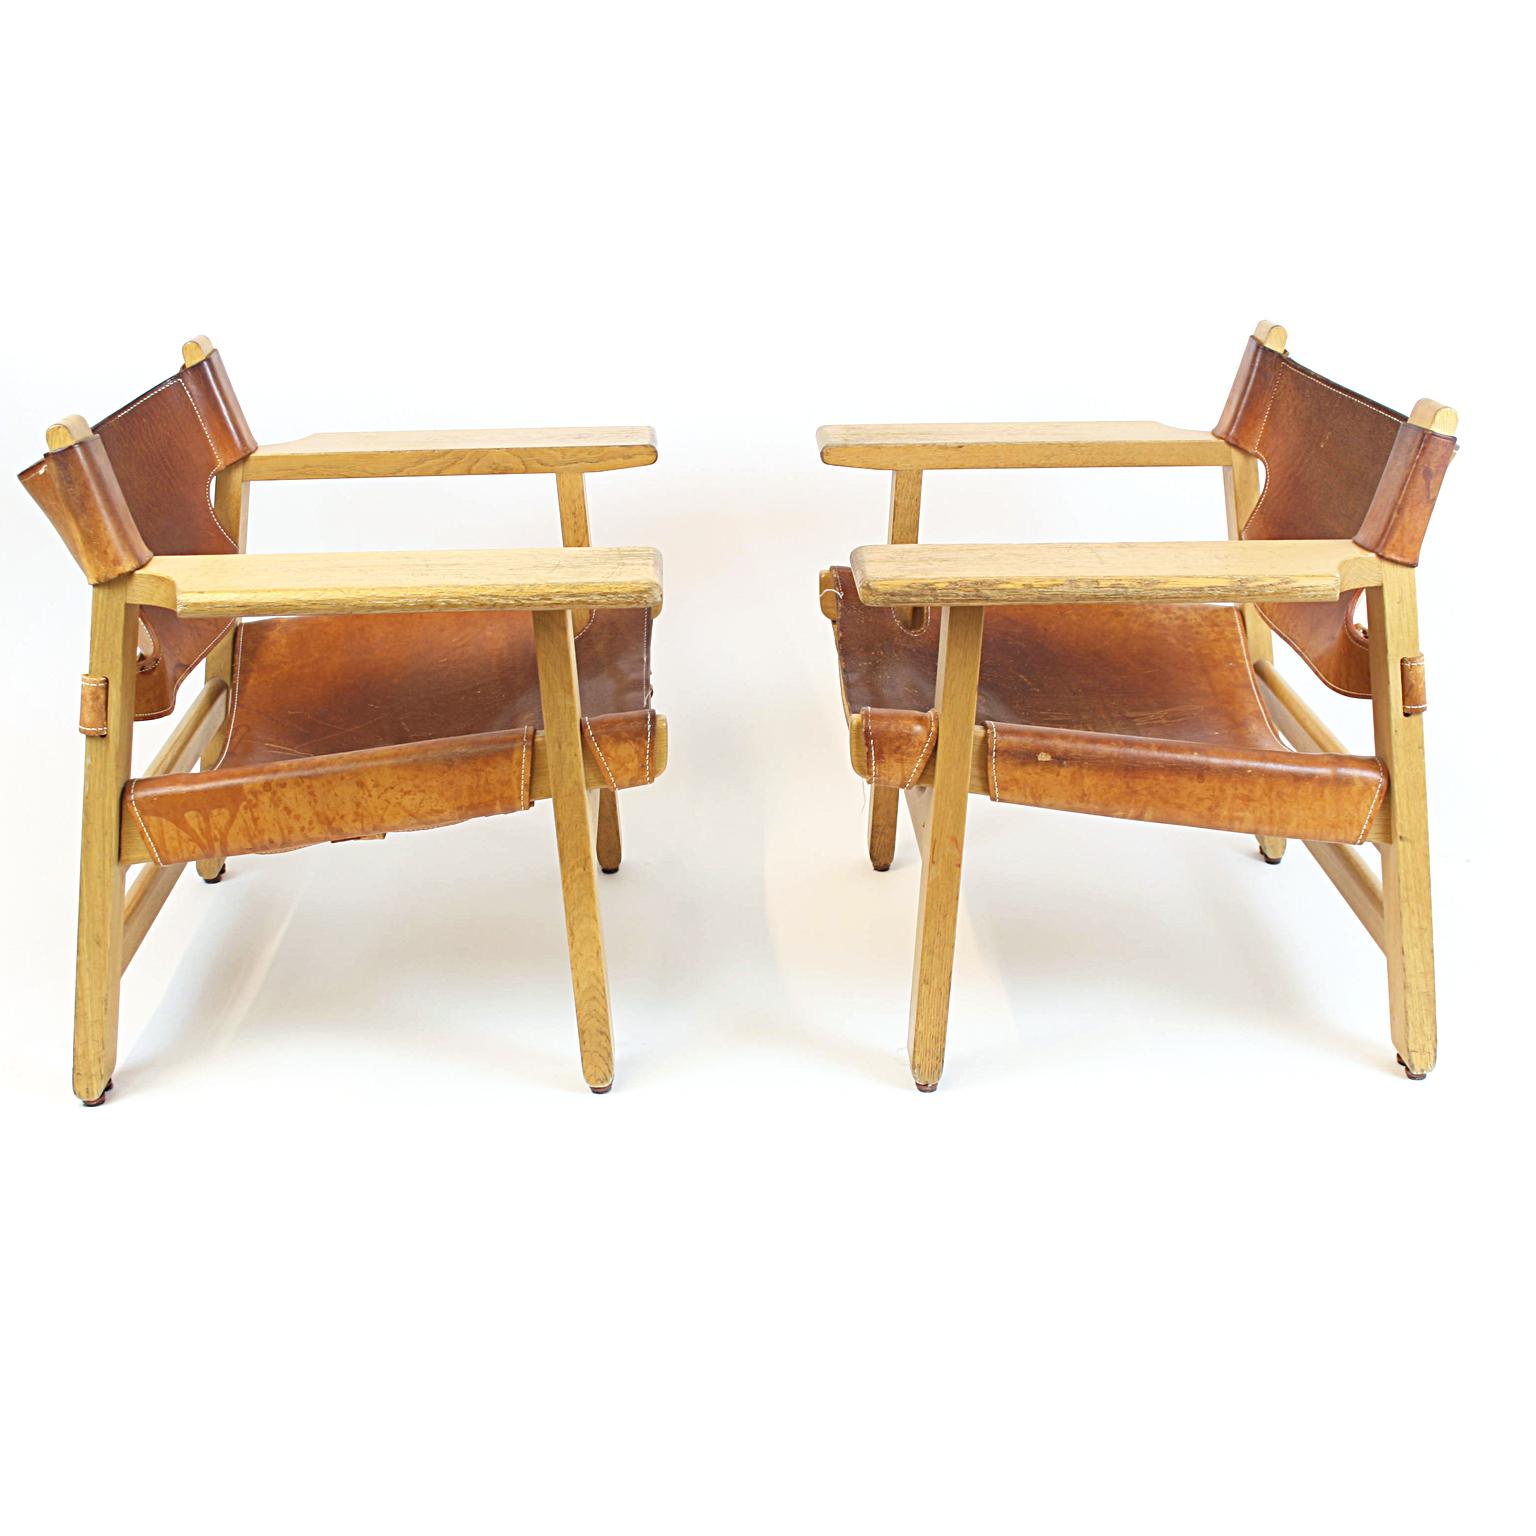 Spanischer Stuhl Modell 226 von Børge Mogensen für Fredericia Stolefabrik. Die Objekte sind aus massivem Eichenholz gefertigt und mit echtem Sattelleder bespannt, das sich in seinem schön patinierten Originalzustand befindet und unrestauriert